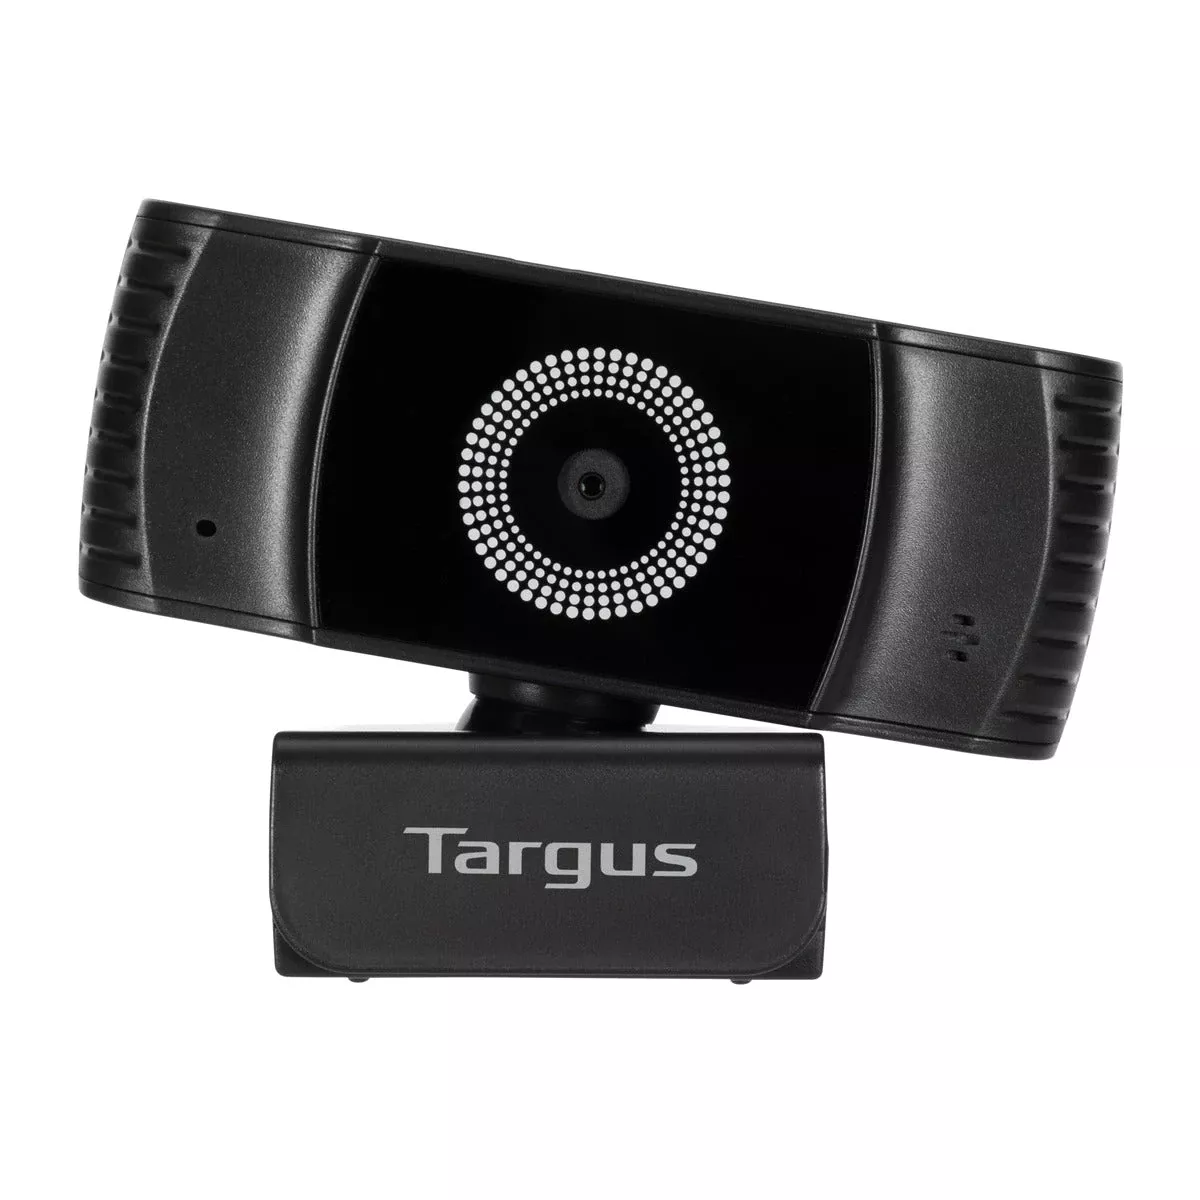 Vente TARGUS Webcam Plus Full HD 1080p Webcam with Targus au meilleur prix - visuel 8